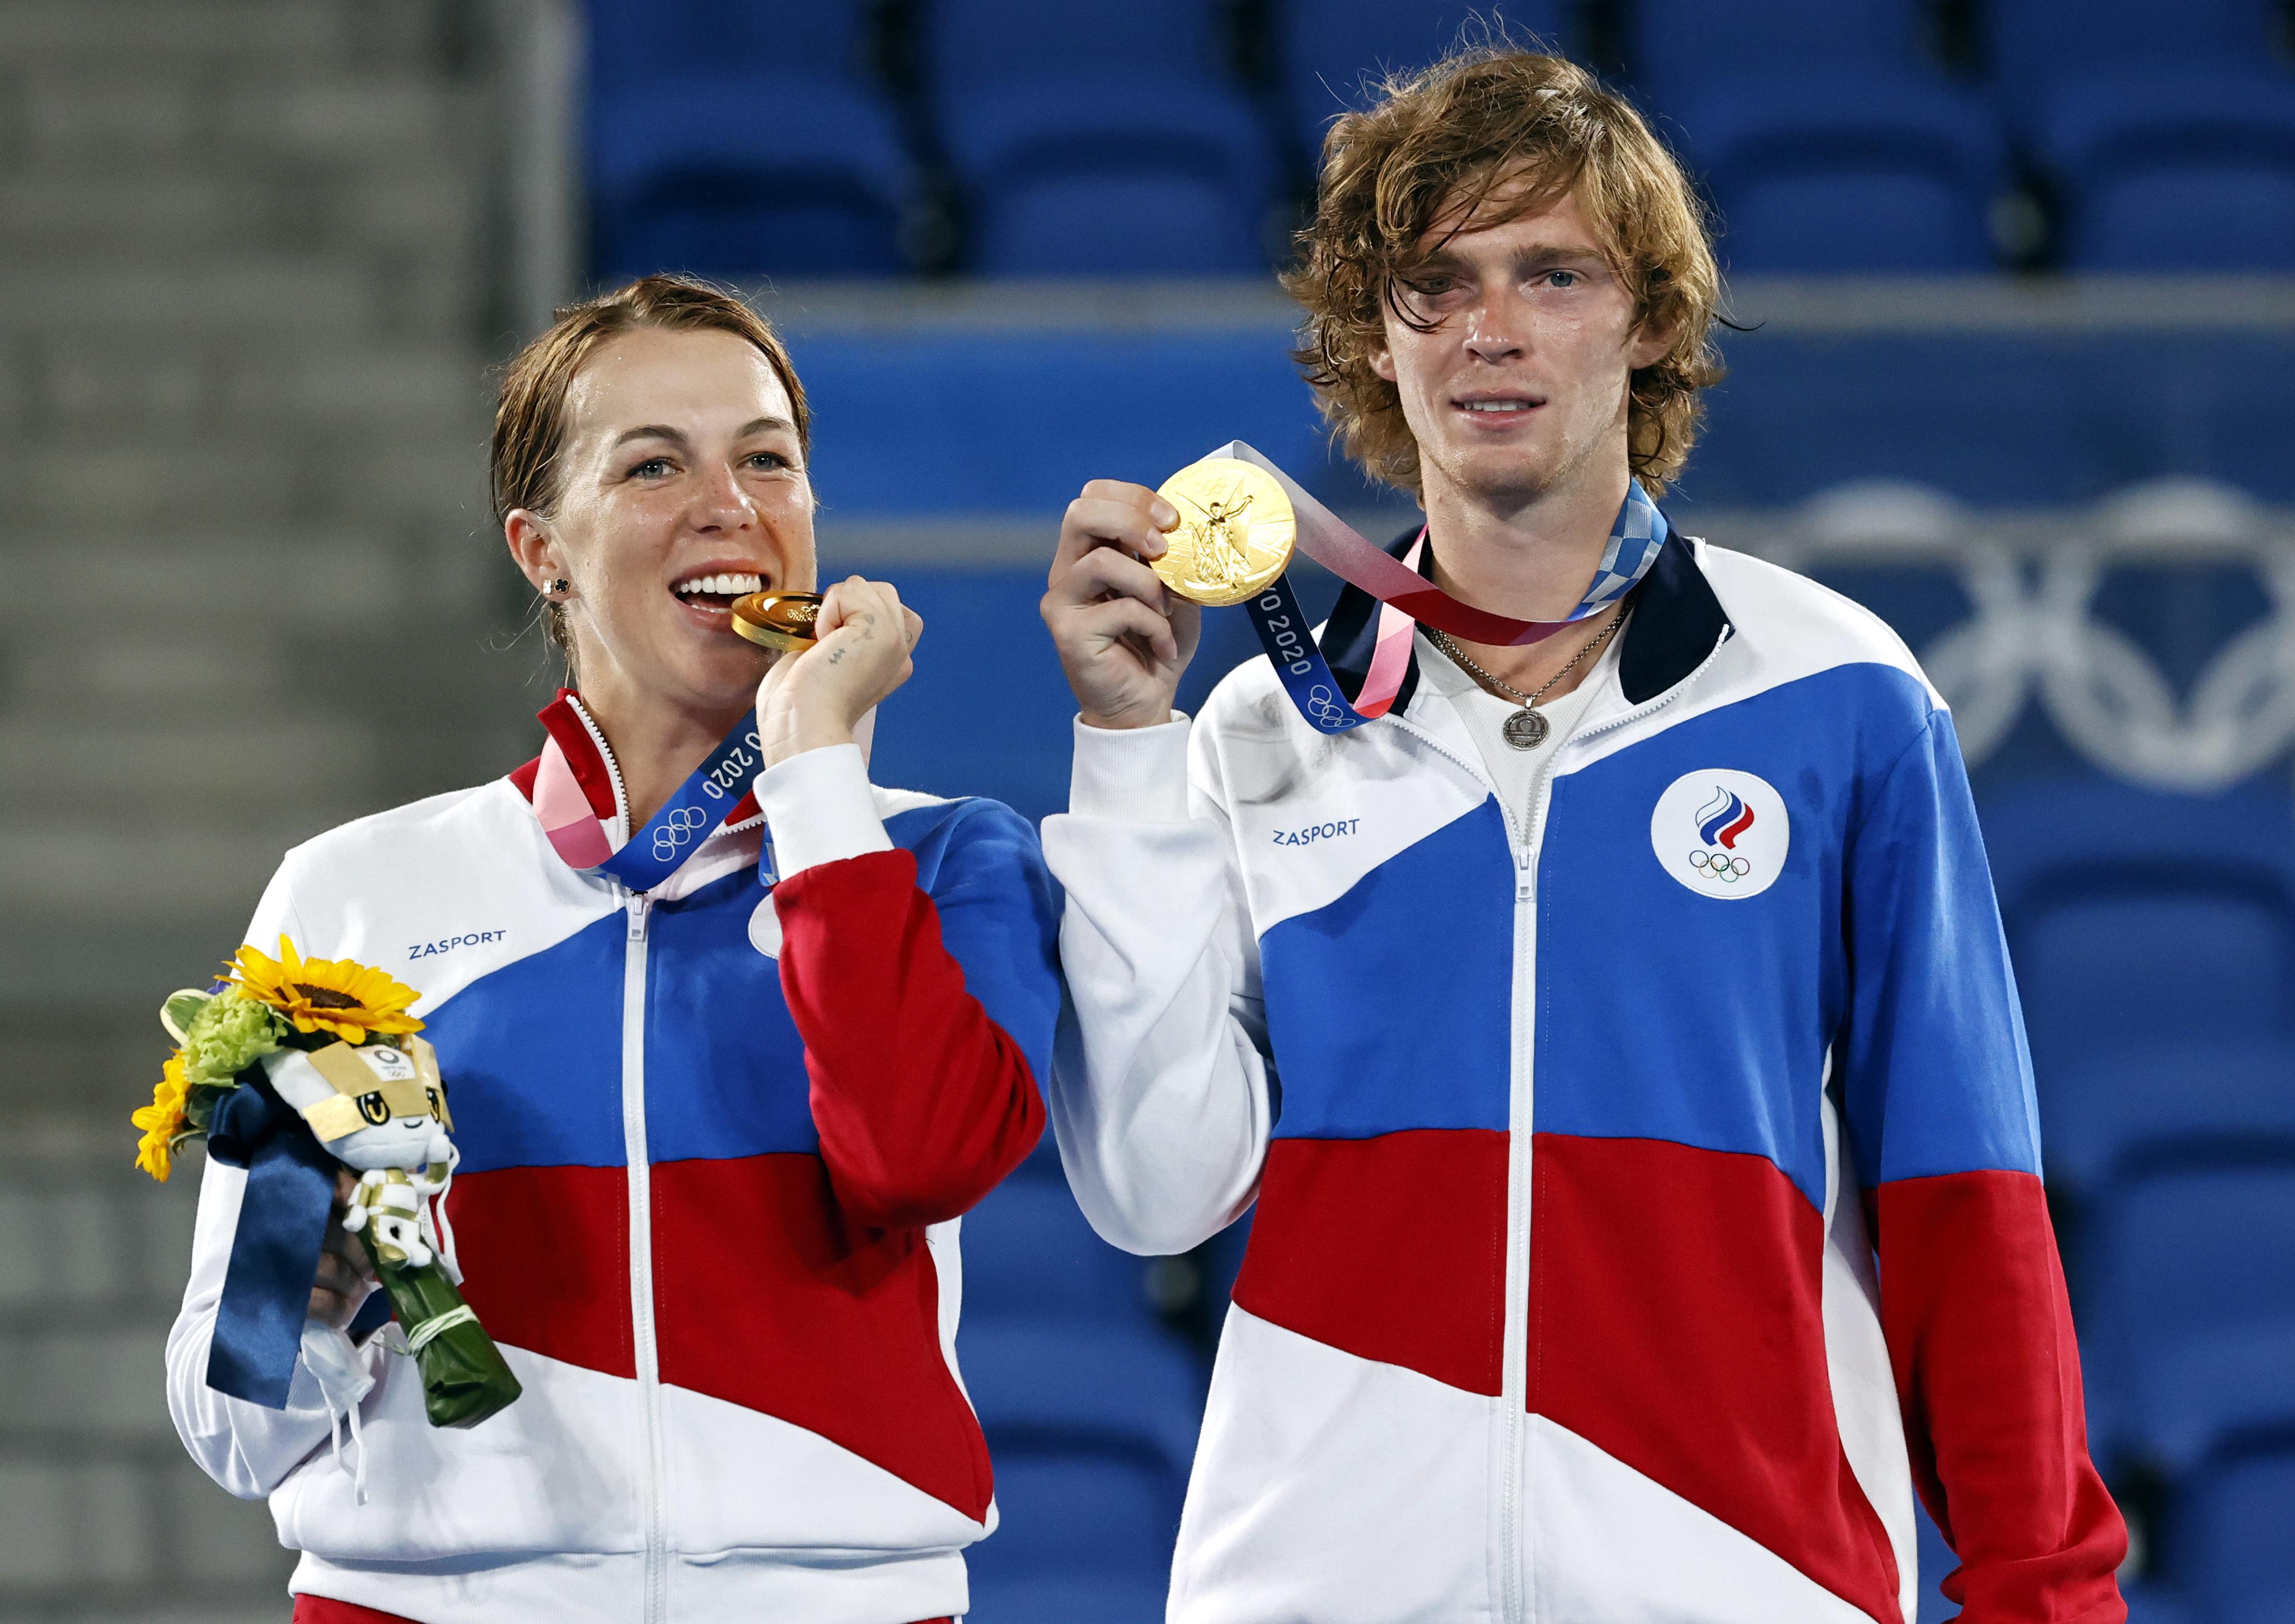 Олимпиада-2020 в Токио. Анастасия Павлюченкова и Андрей Рублев